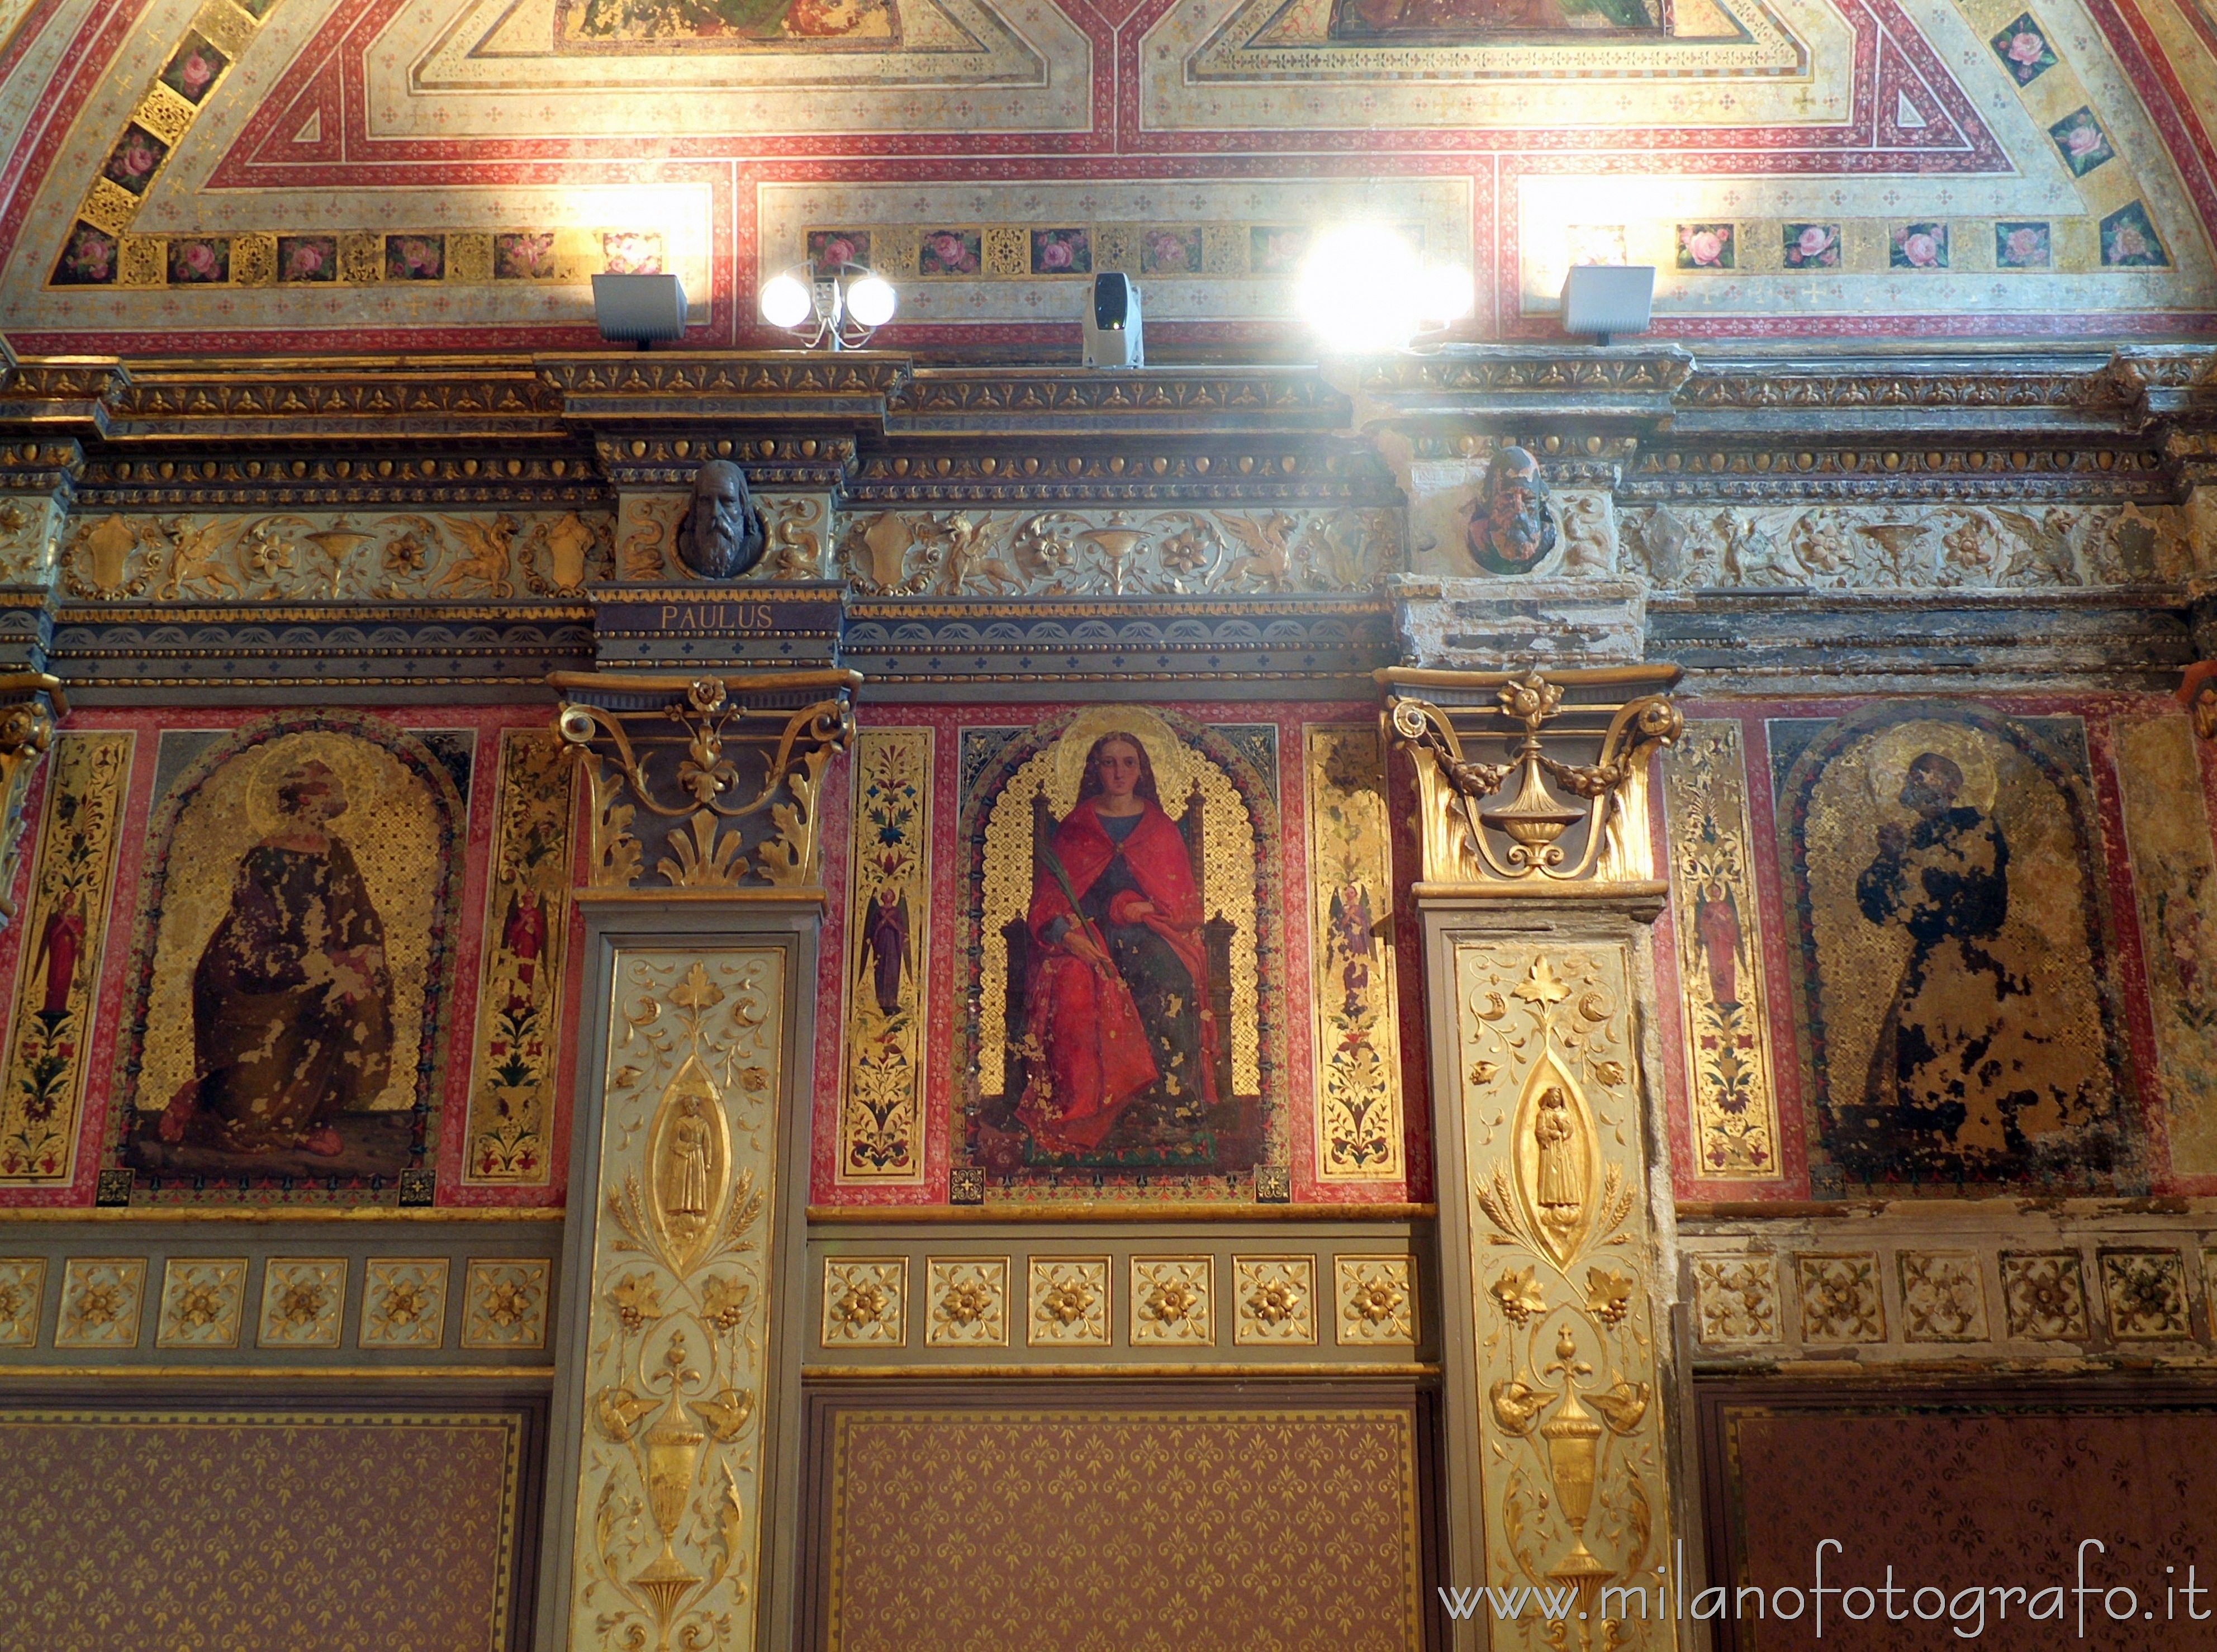 Desio (Milan): Decorazioni neorinascimentali nella cappella neorinascimentale di Villa Cusani Traversi Tittoni - Desio (Milan)